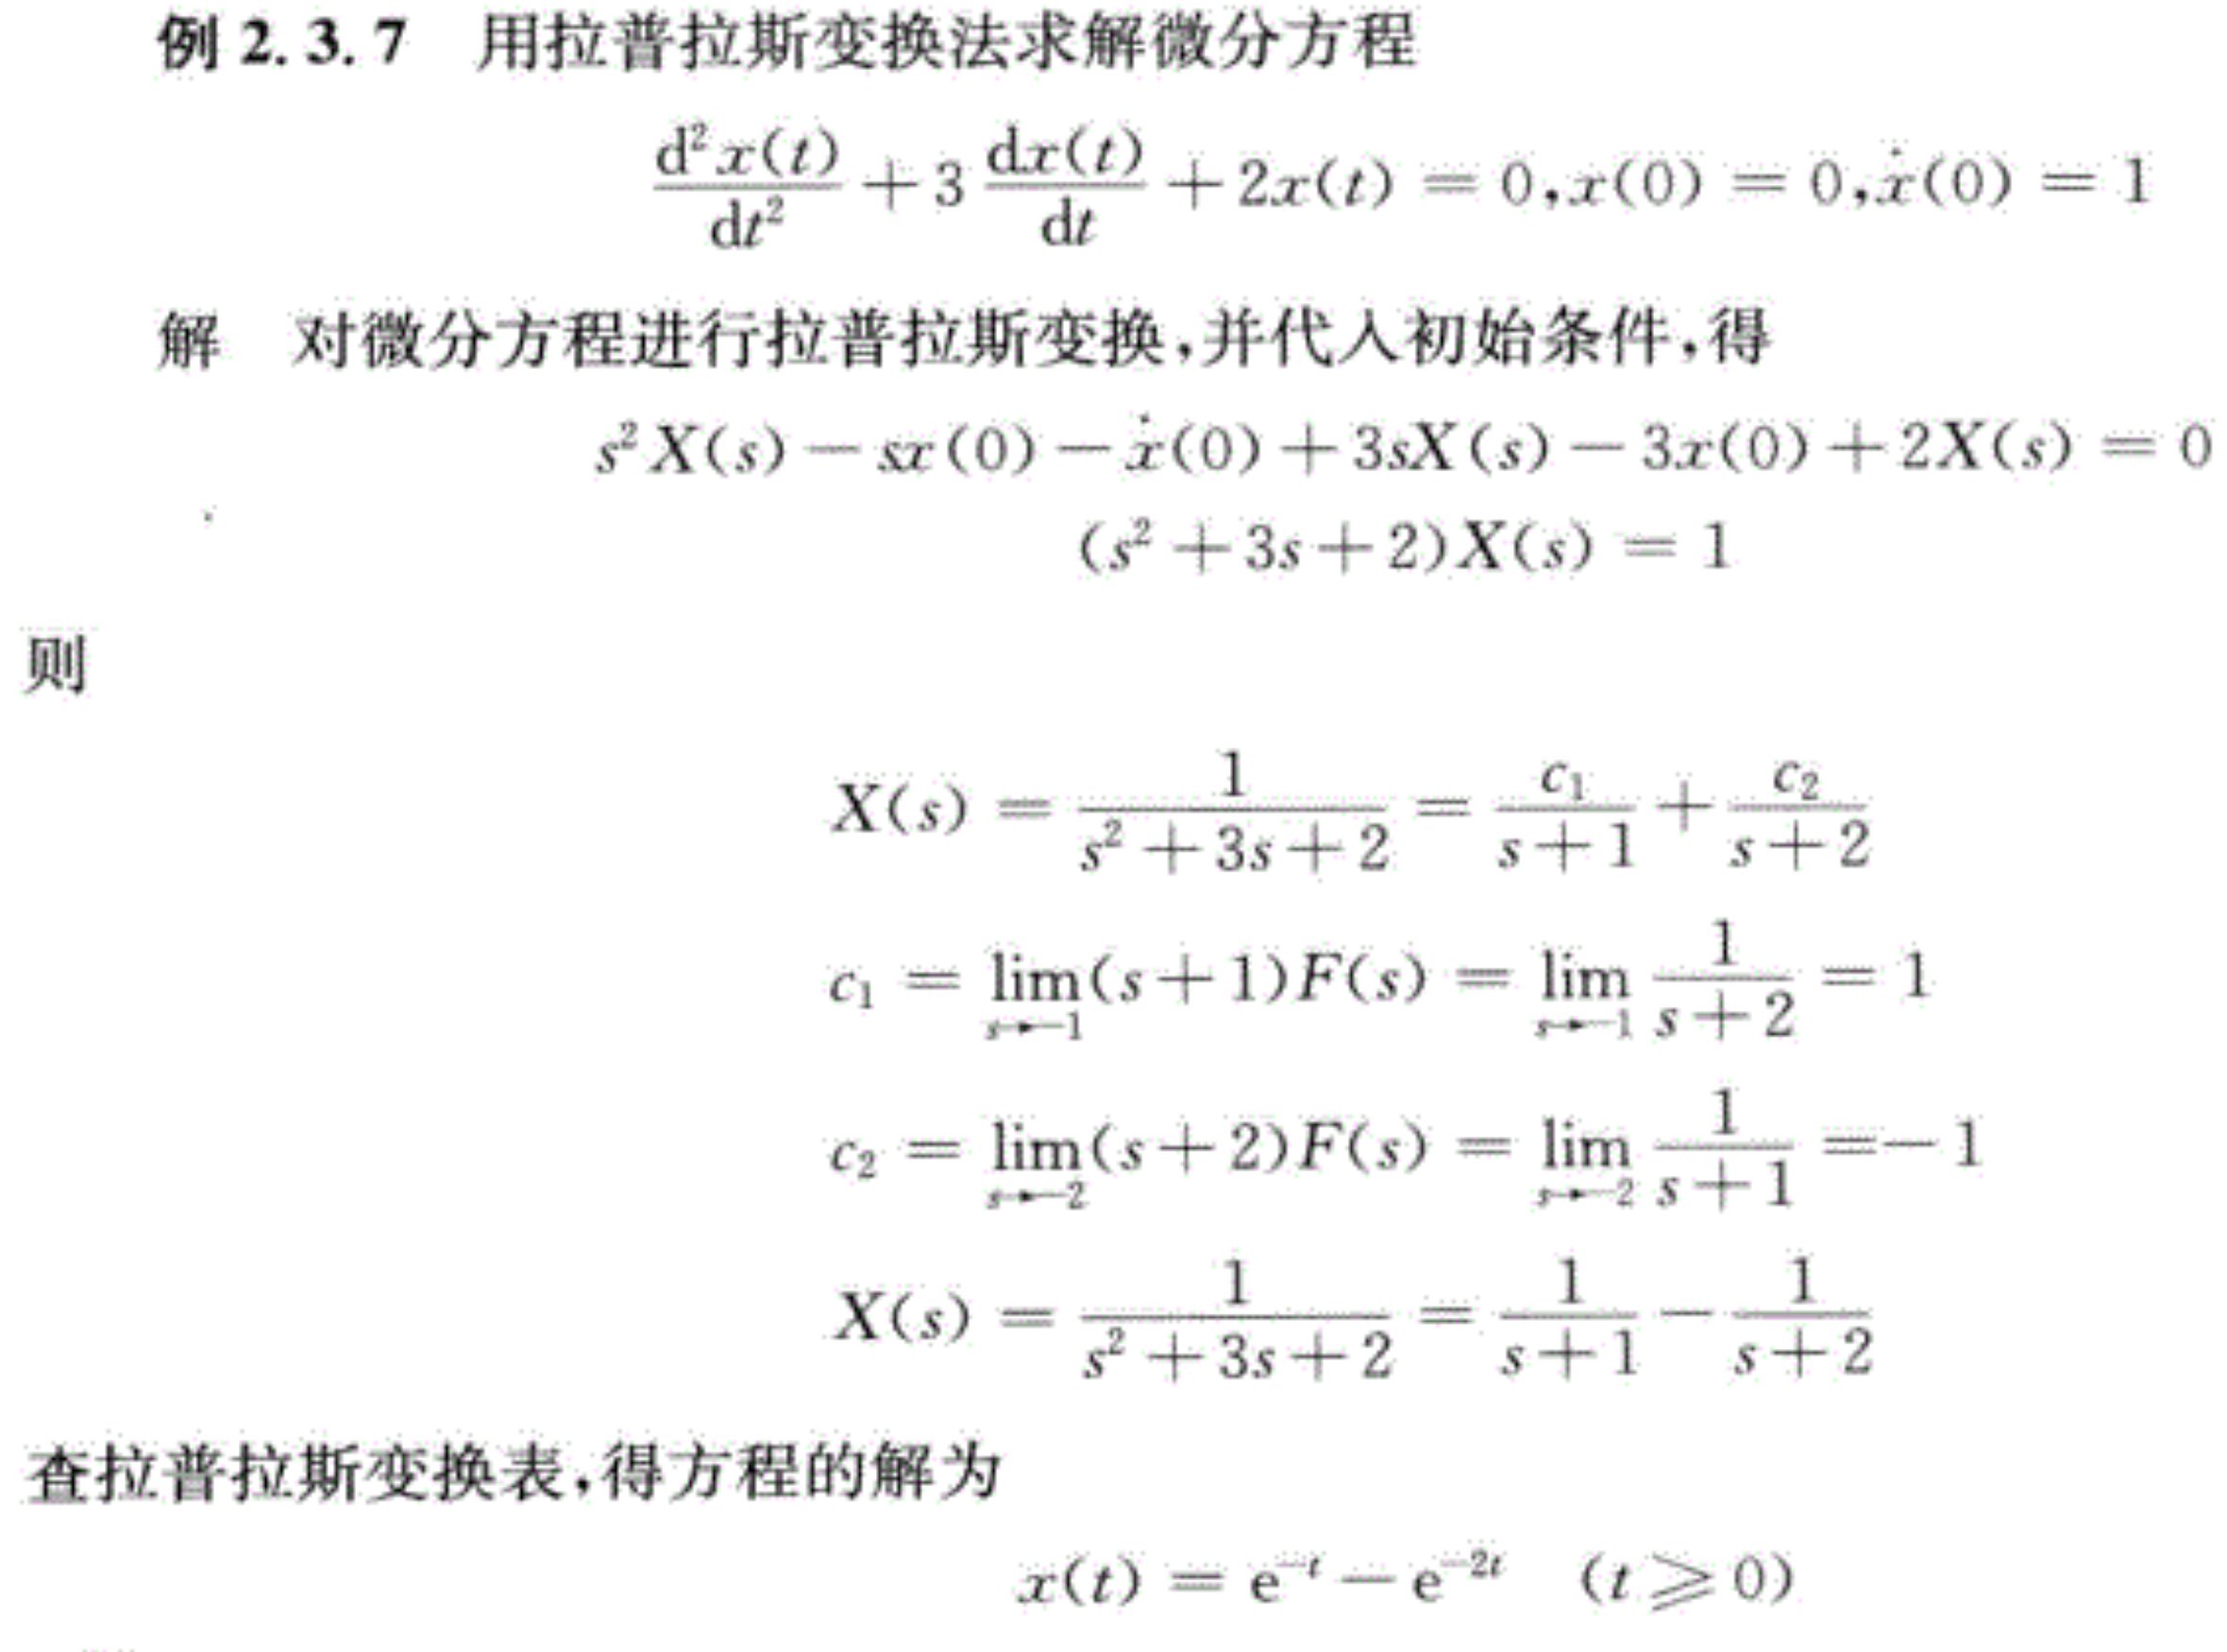 例题8：用拉氏变换求解微分方程